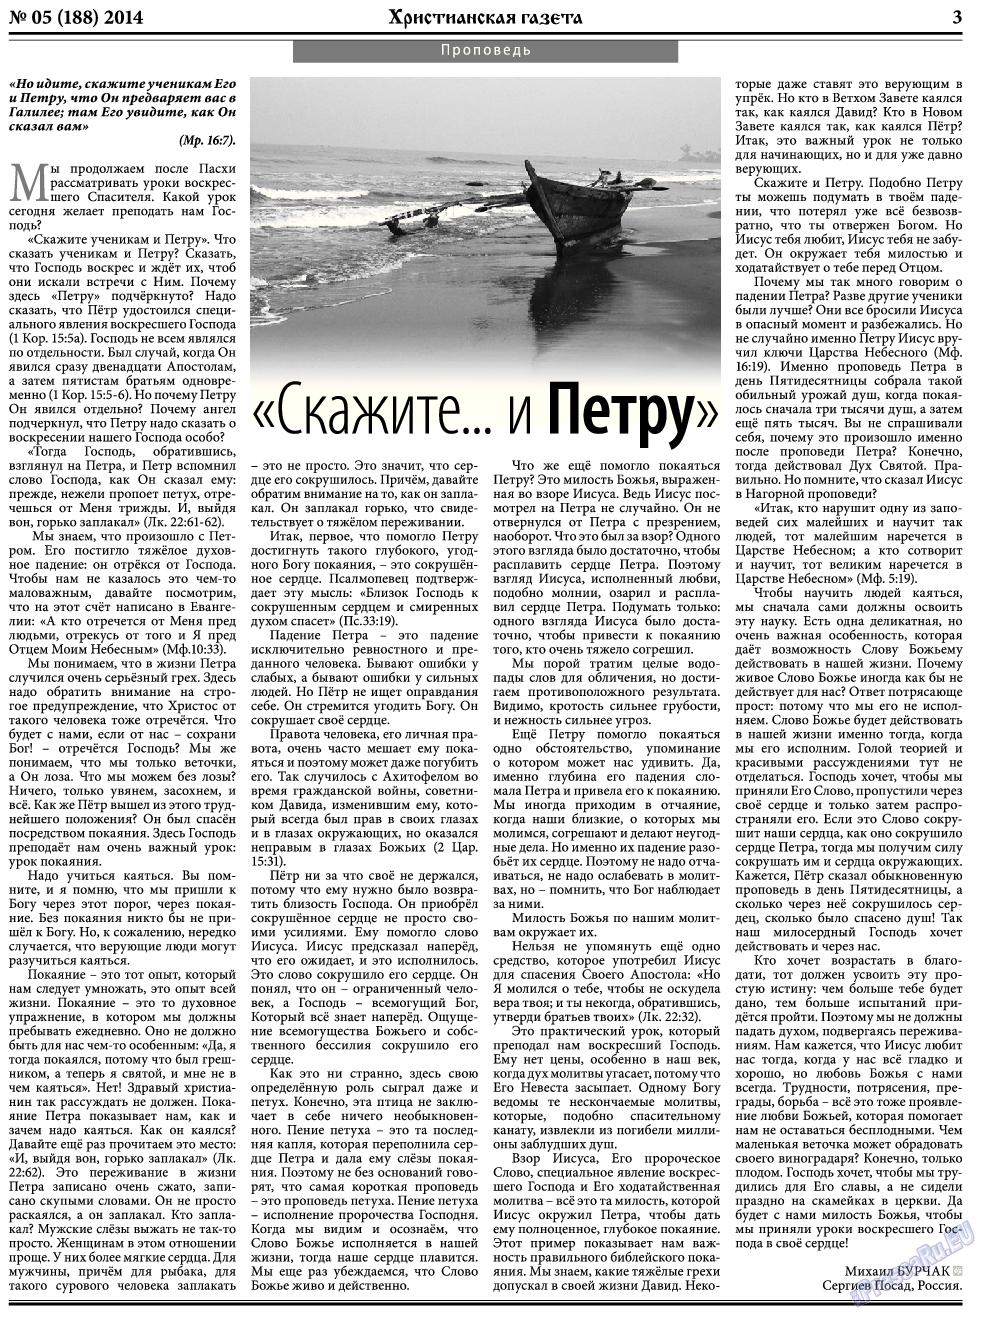 Христианская газета, газета. 2014 №5 стр.3